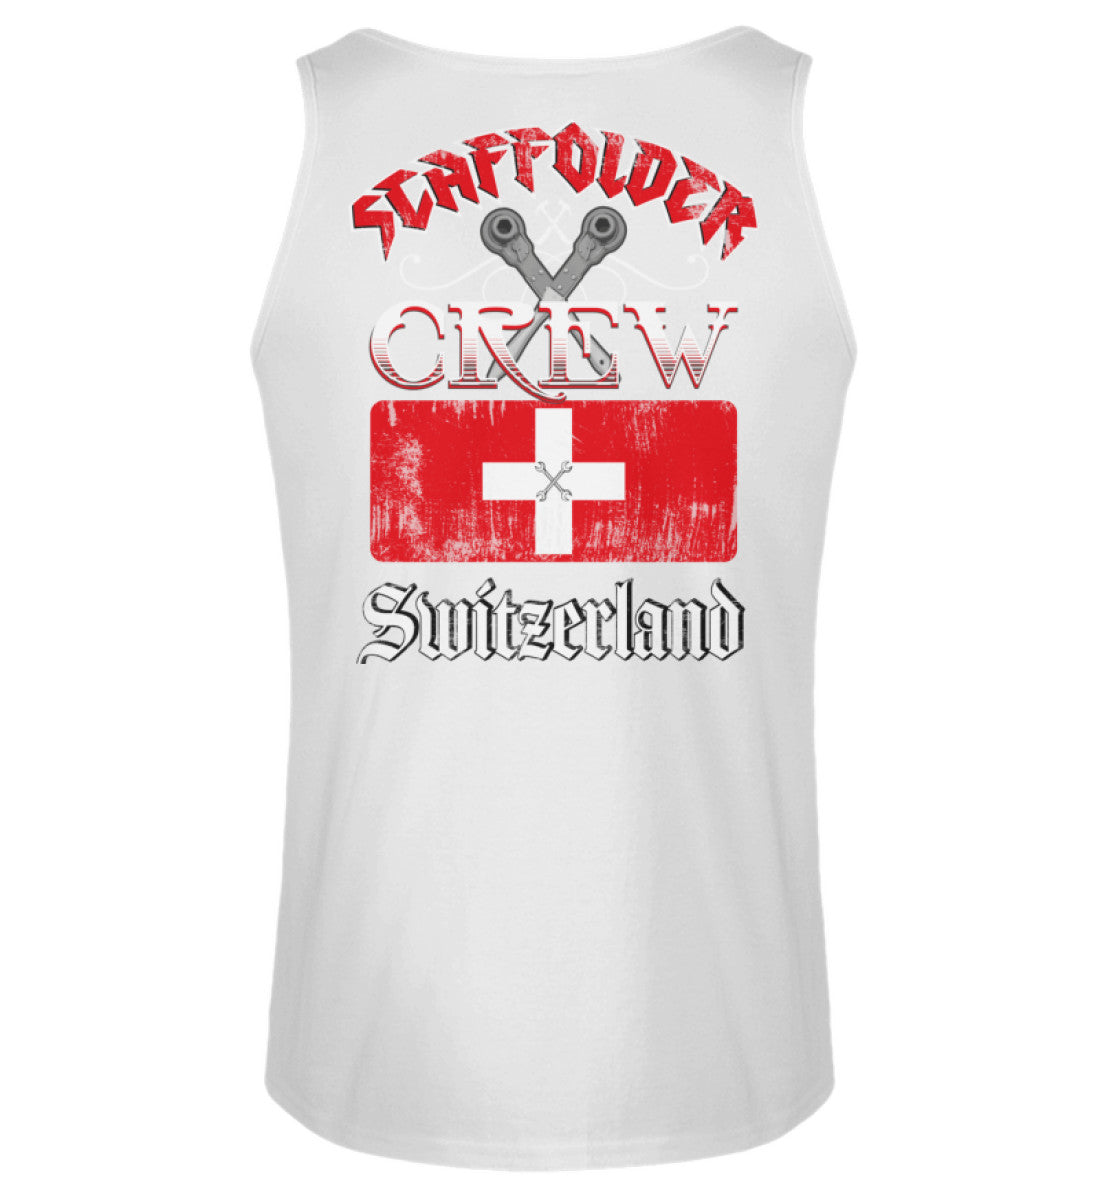 Scaffolder Crew Switzerland €22.95 Gerüstbauer - Shop >>